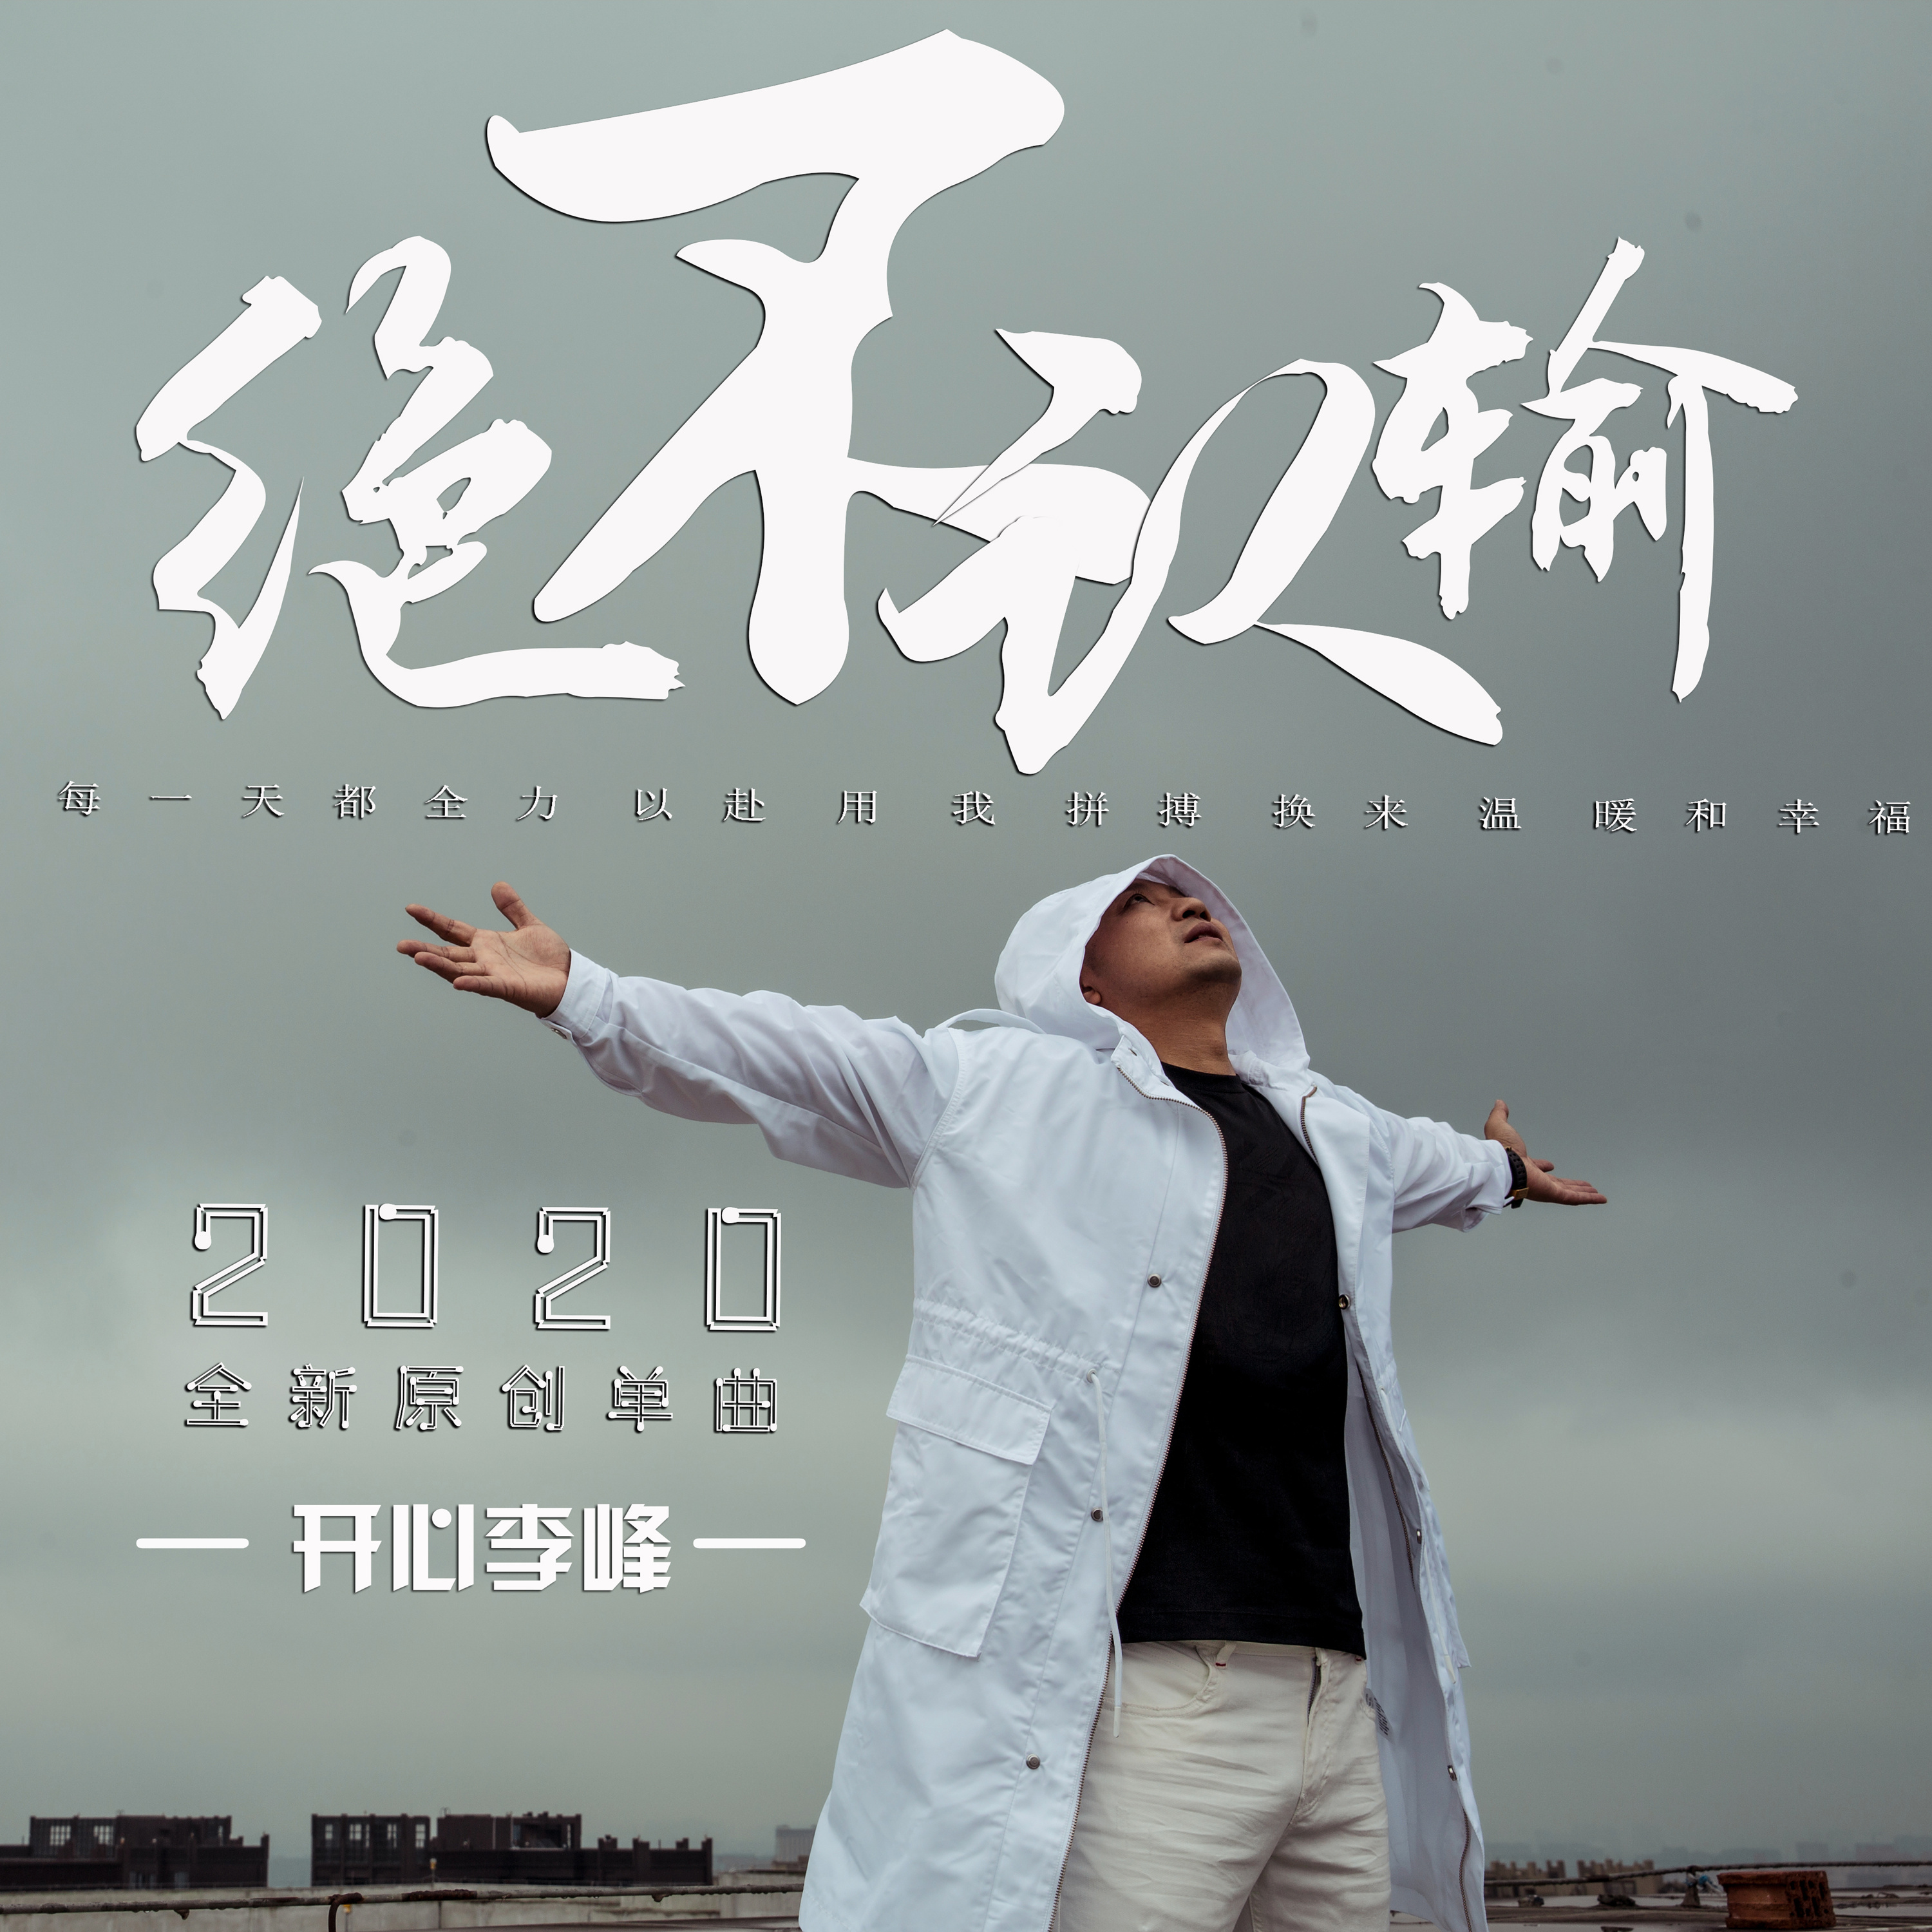 近日,开心李峰首支单曲《绝不认输》在各个音乐平台上线,励志的歌词